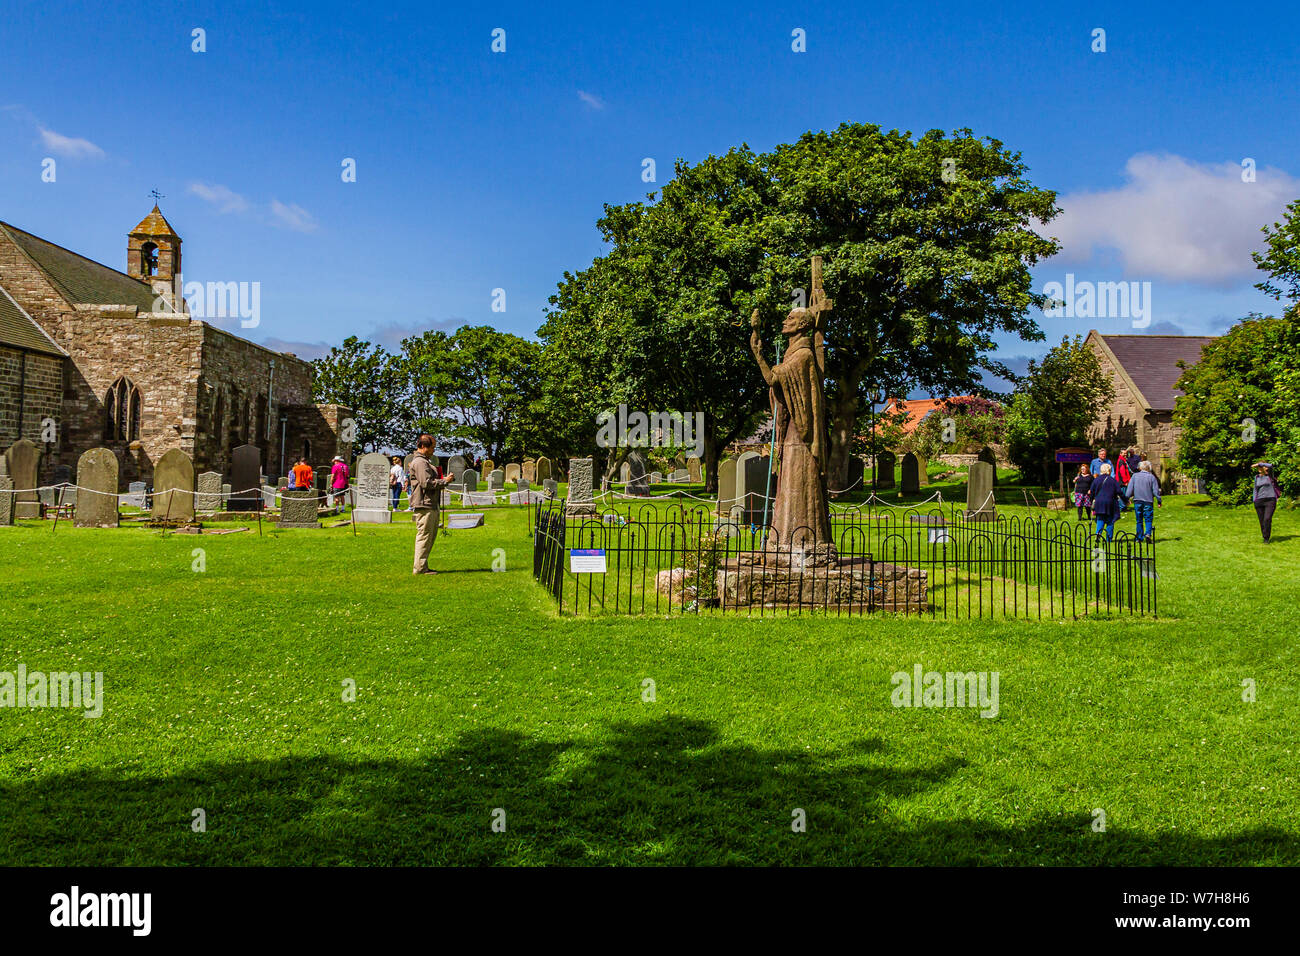 La statue de Saint Aidan médiéval dans le Parc du Prieuré de Lindisfarne. L'Île Sainte de Lindisfarne, Northumberland, Angleterre. Juillet 2019. Banque D'Images